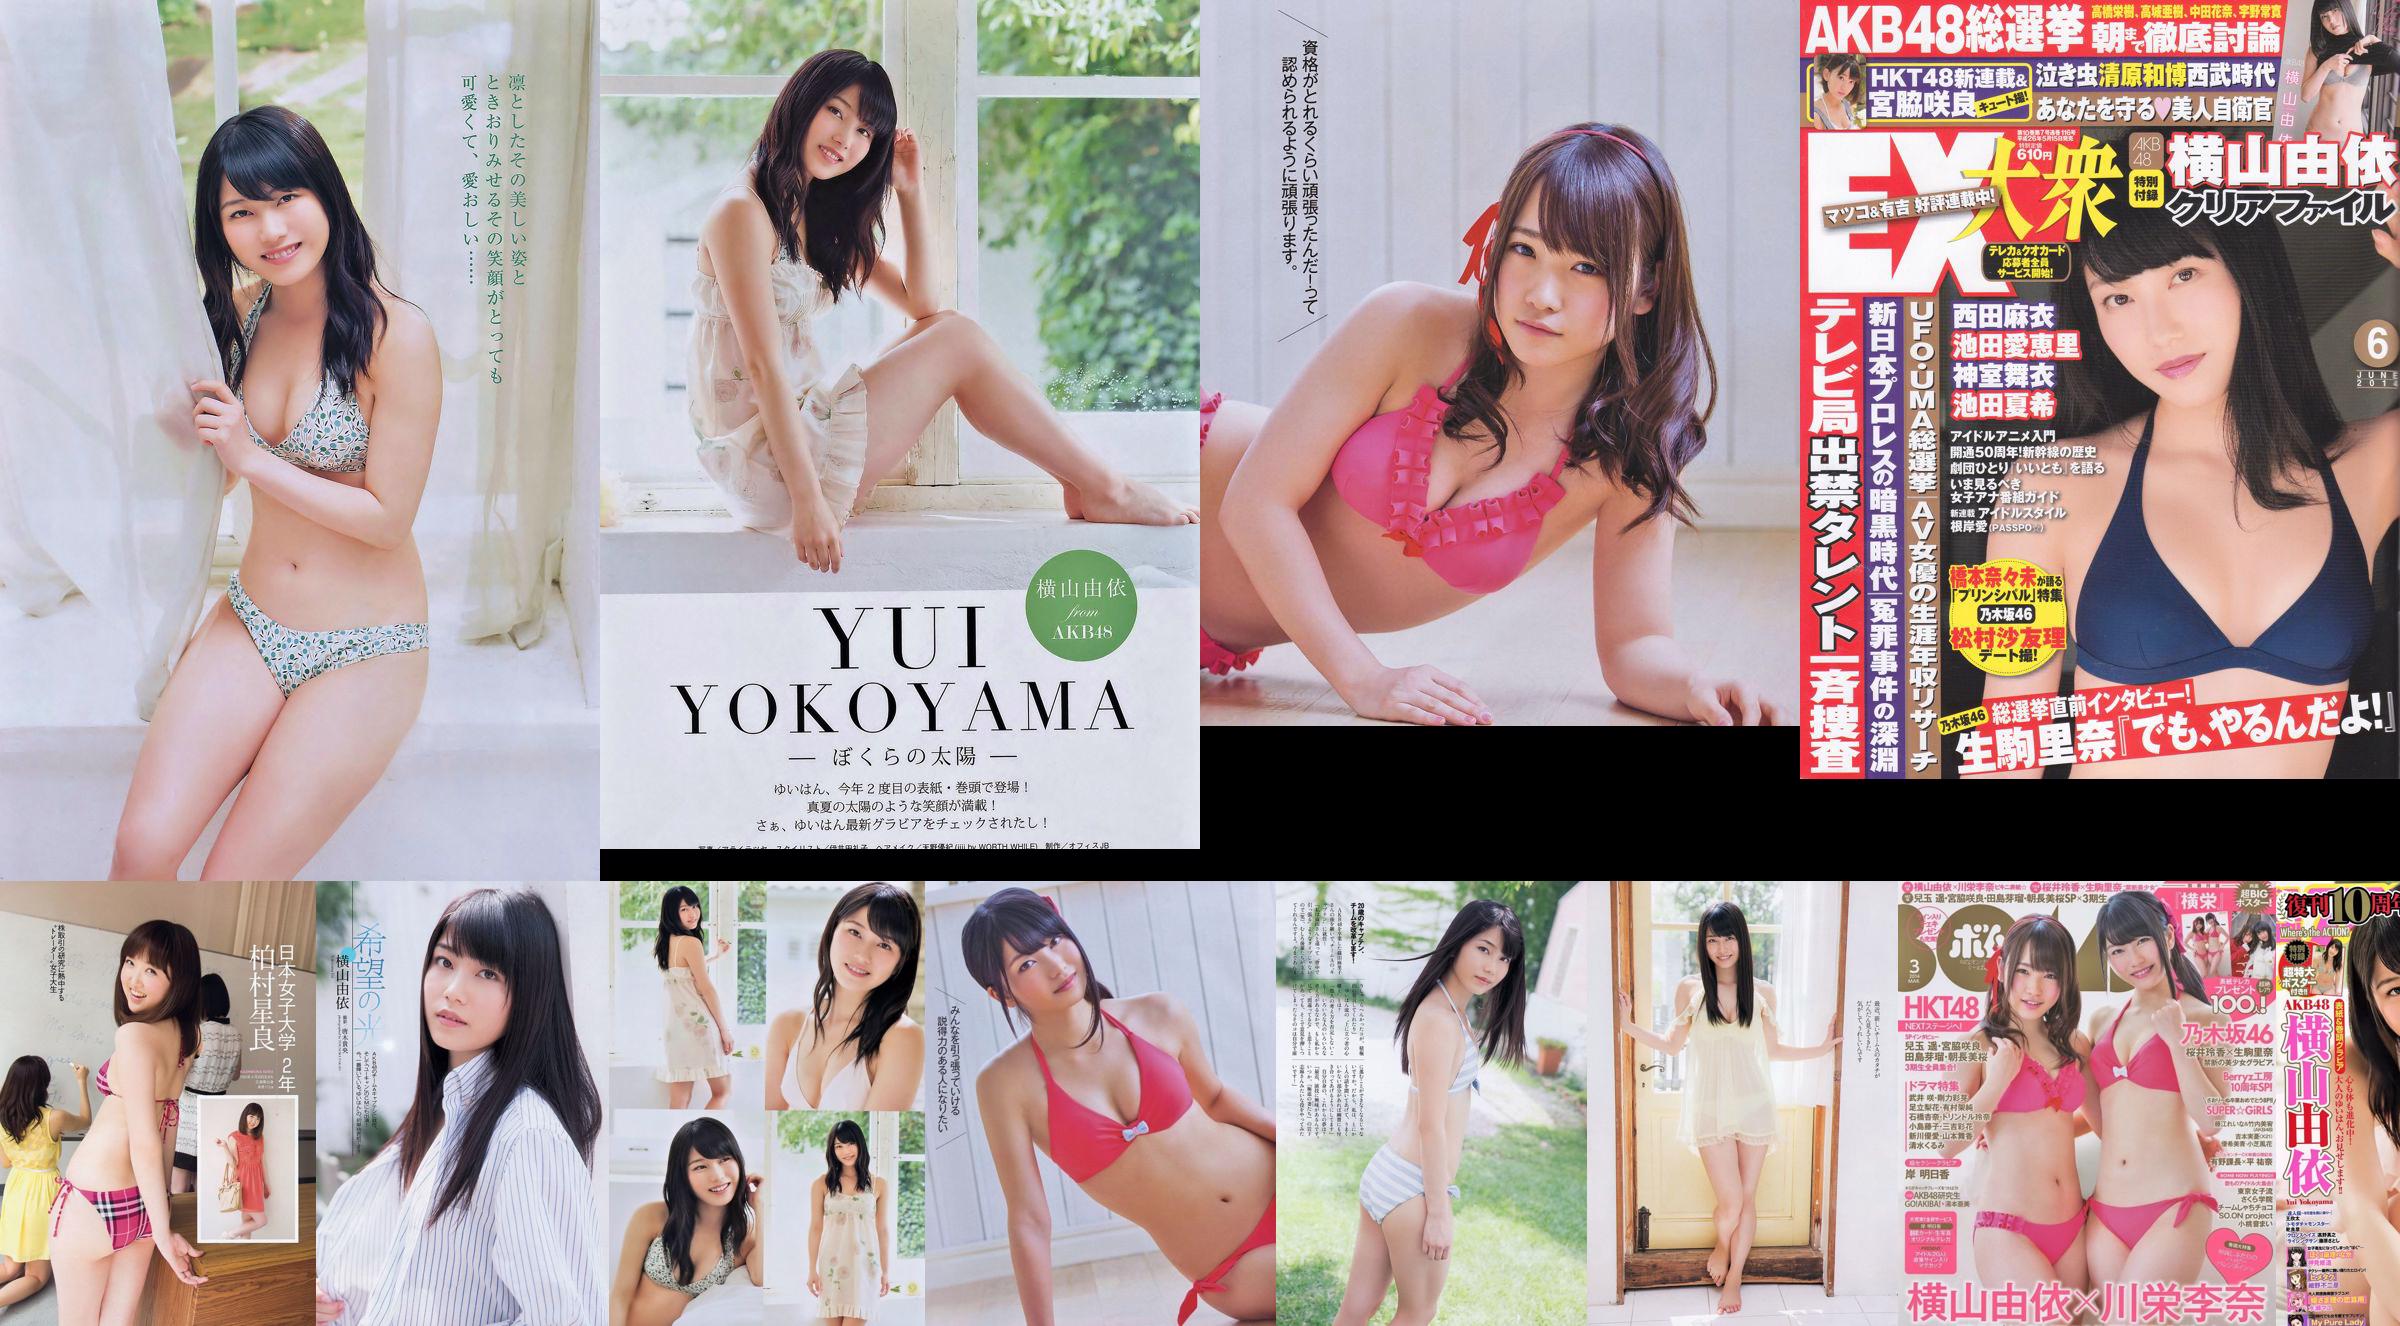 [EX Taishu] Yokoyama Yui, Miyawaki Sakura, Matsumura Sa Yuri 2014 No.06 Photo Magazine No.9e6e4a Page 1